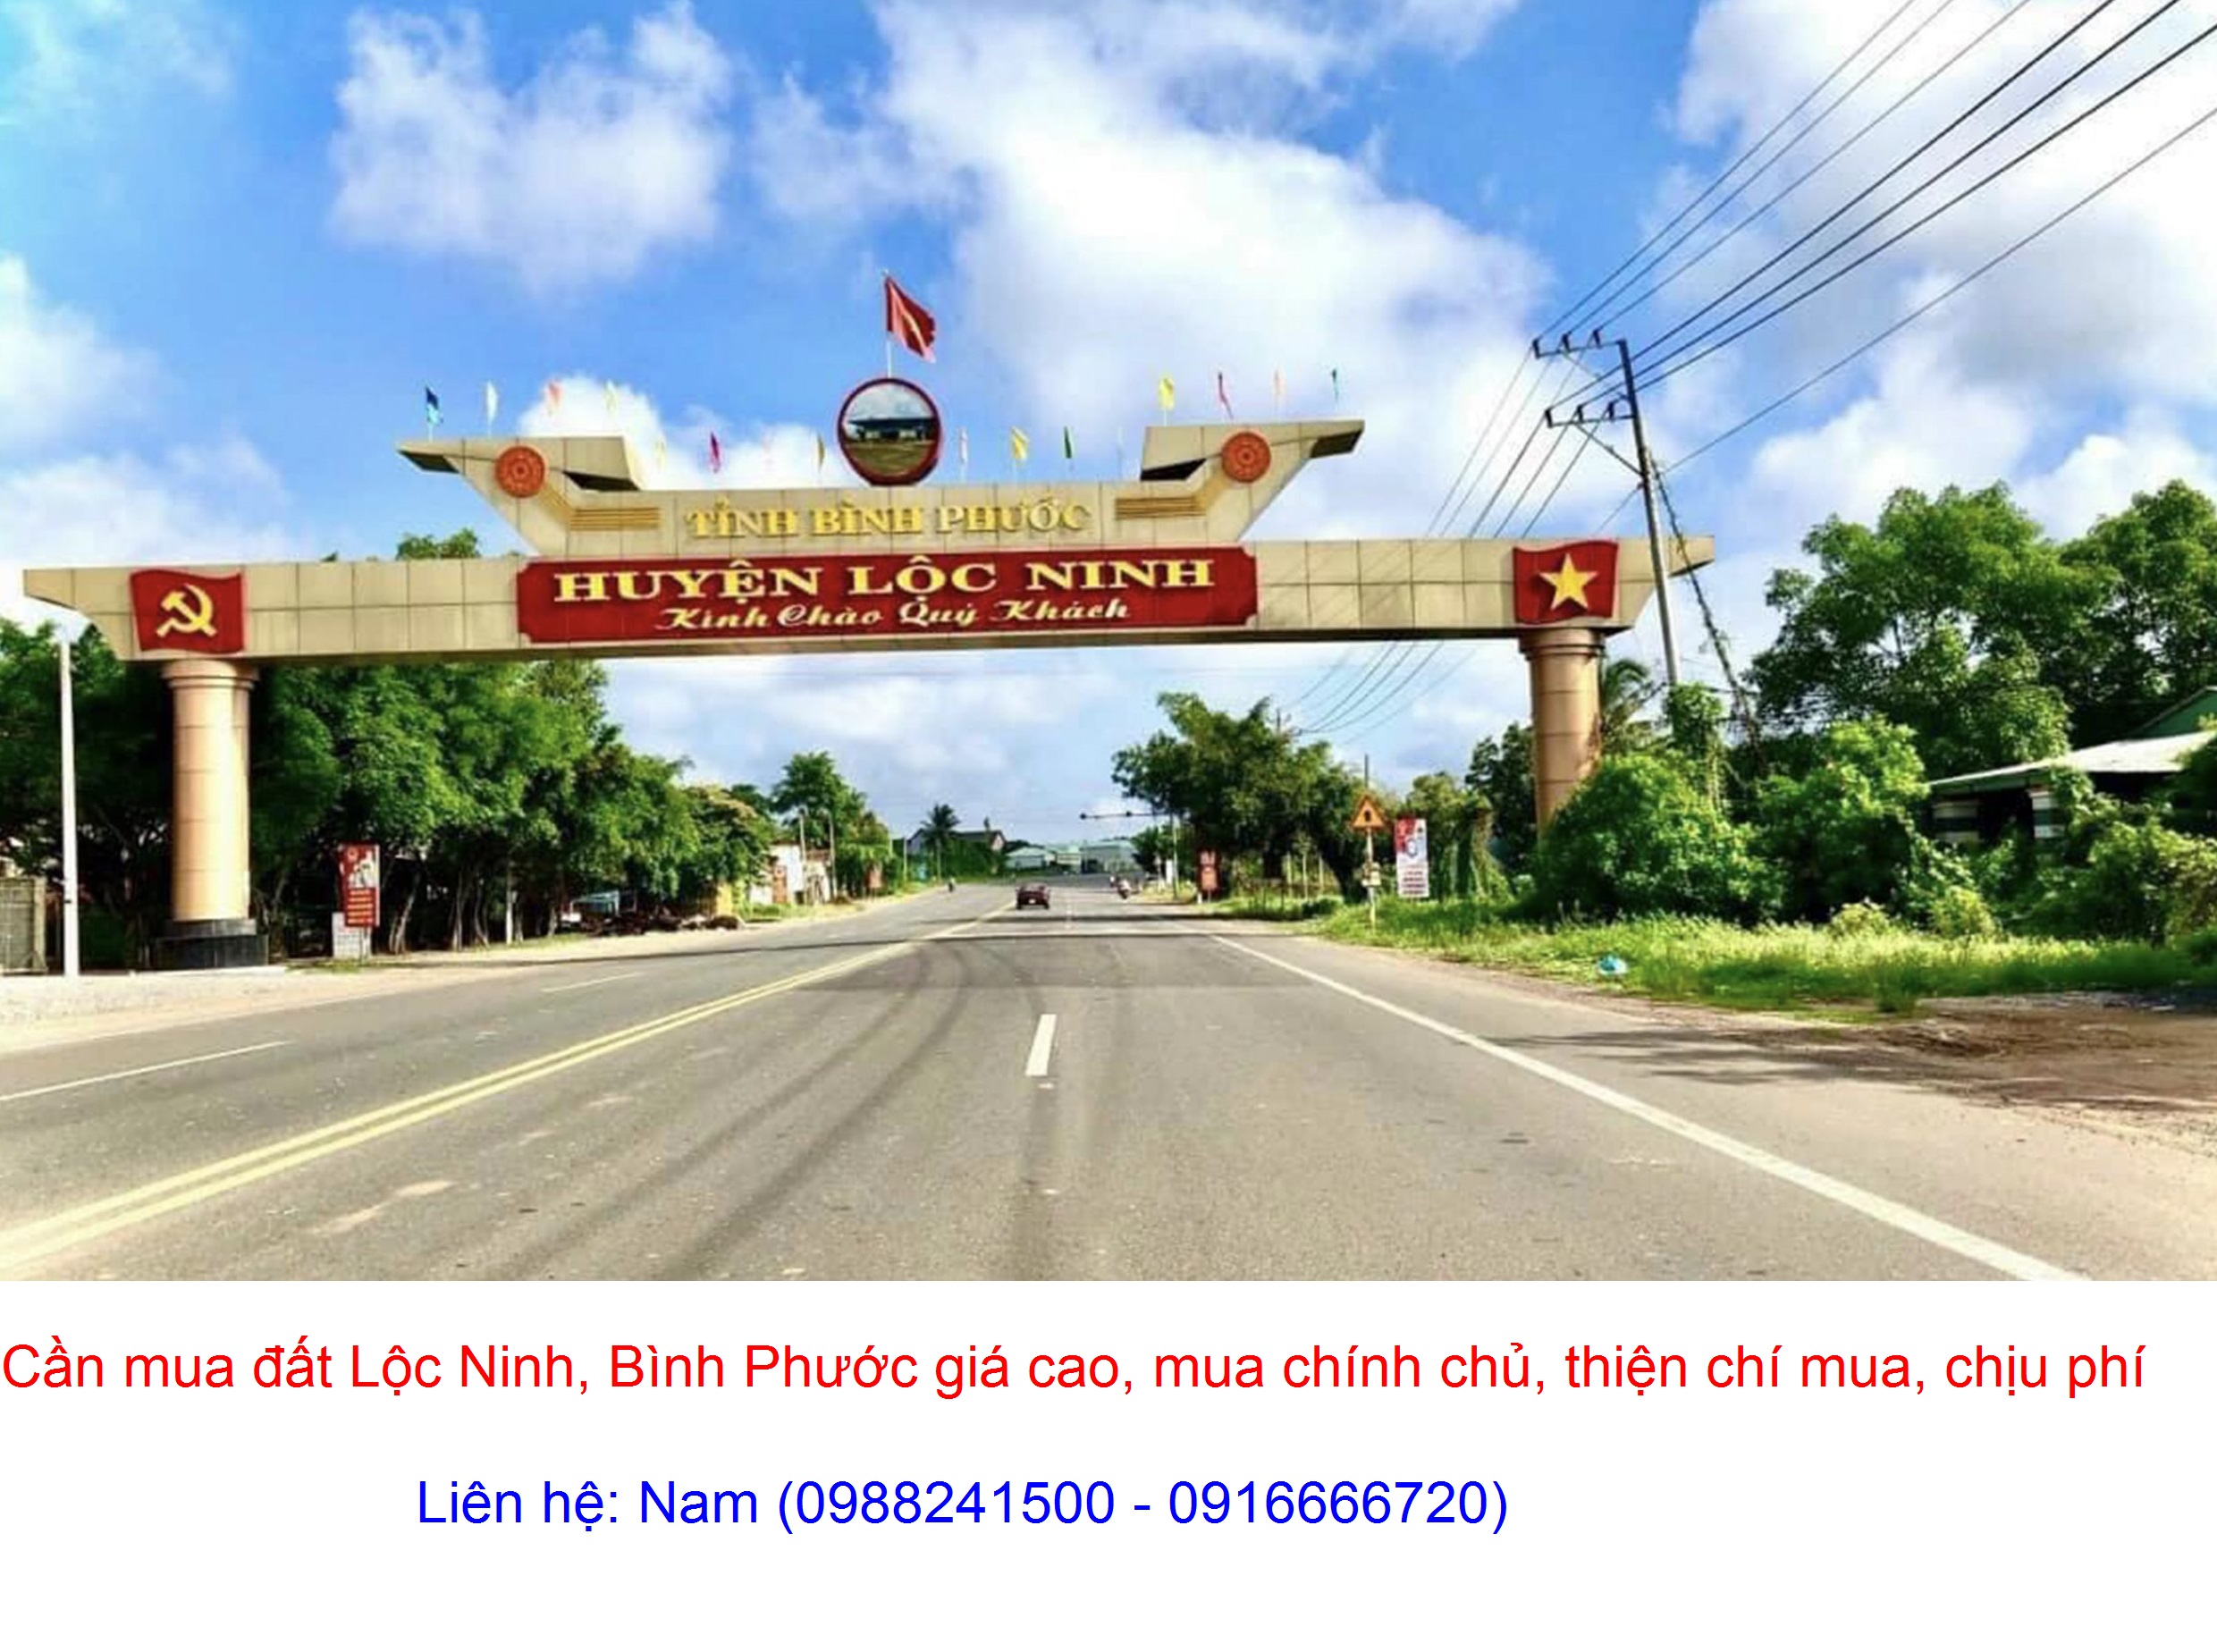 Cần Mua gấp đất Lộc Ninh, Bình Phước giá cao, thiện chí mua